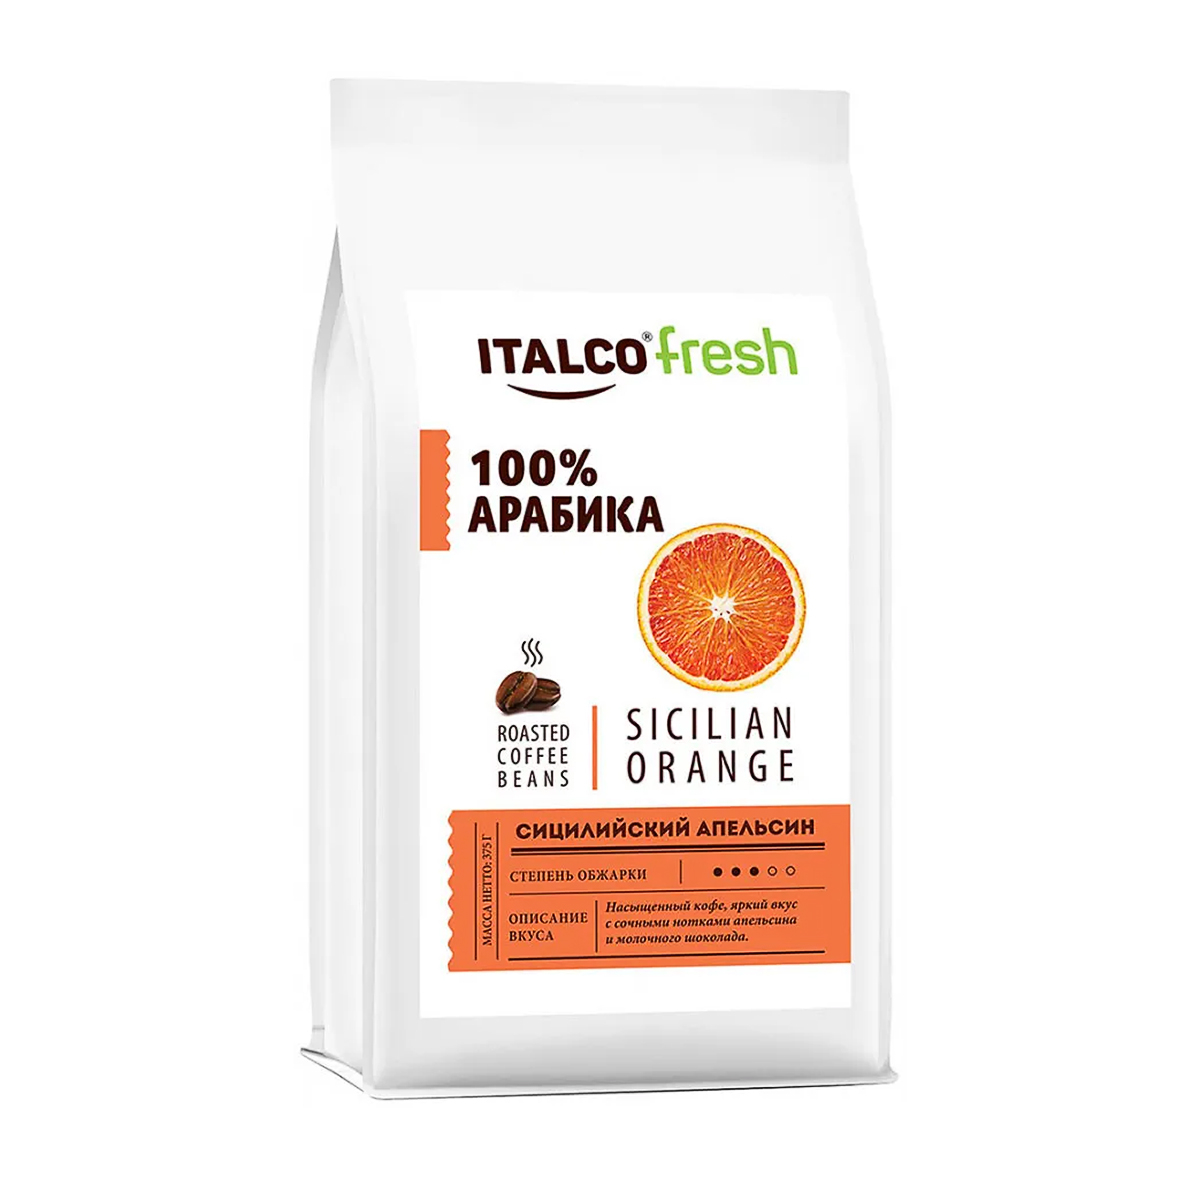 Кофе в зернах Italco ароматизированный Sicilian orange 175 г кофе в зернах ароматизированный cherry tiramisu вишневый тирамису italco 375 г